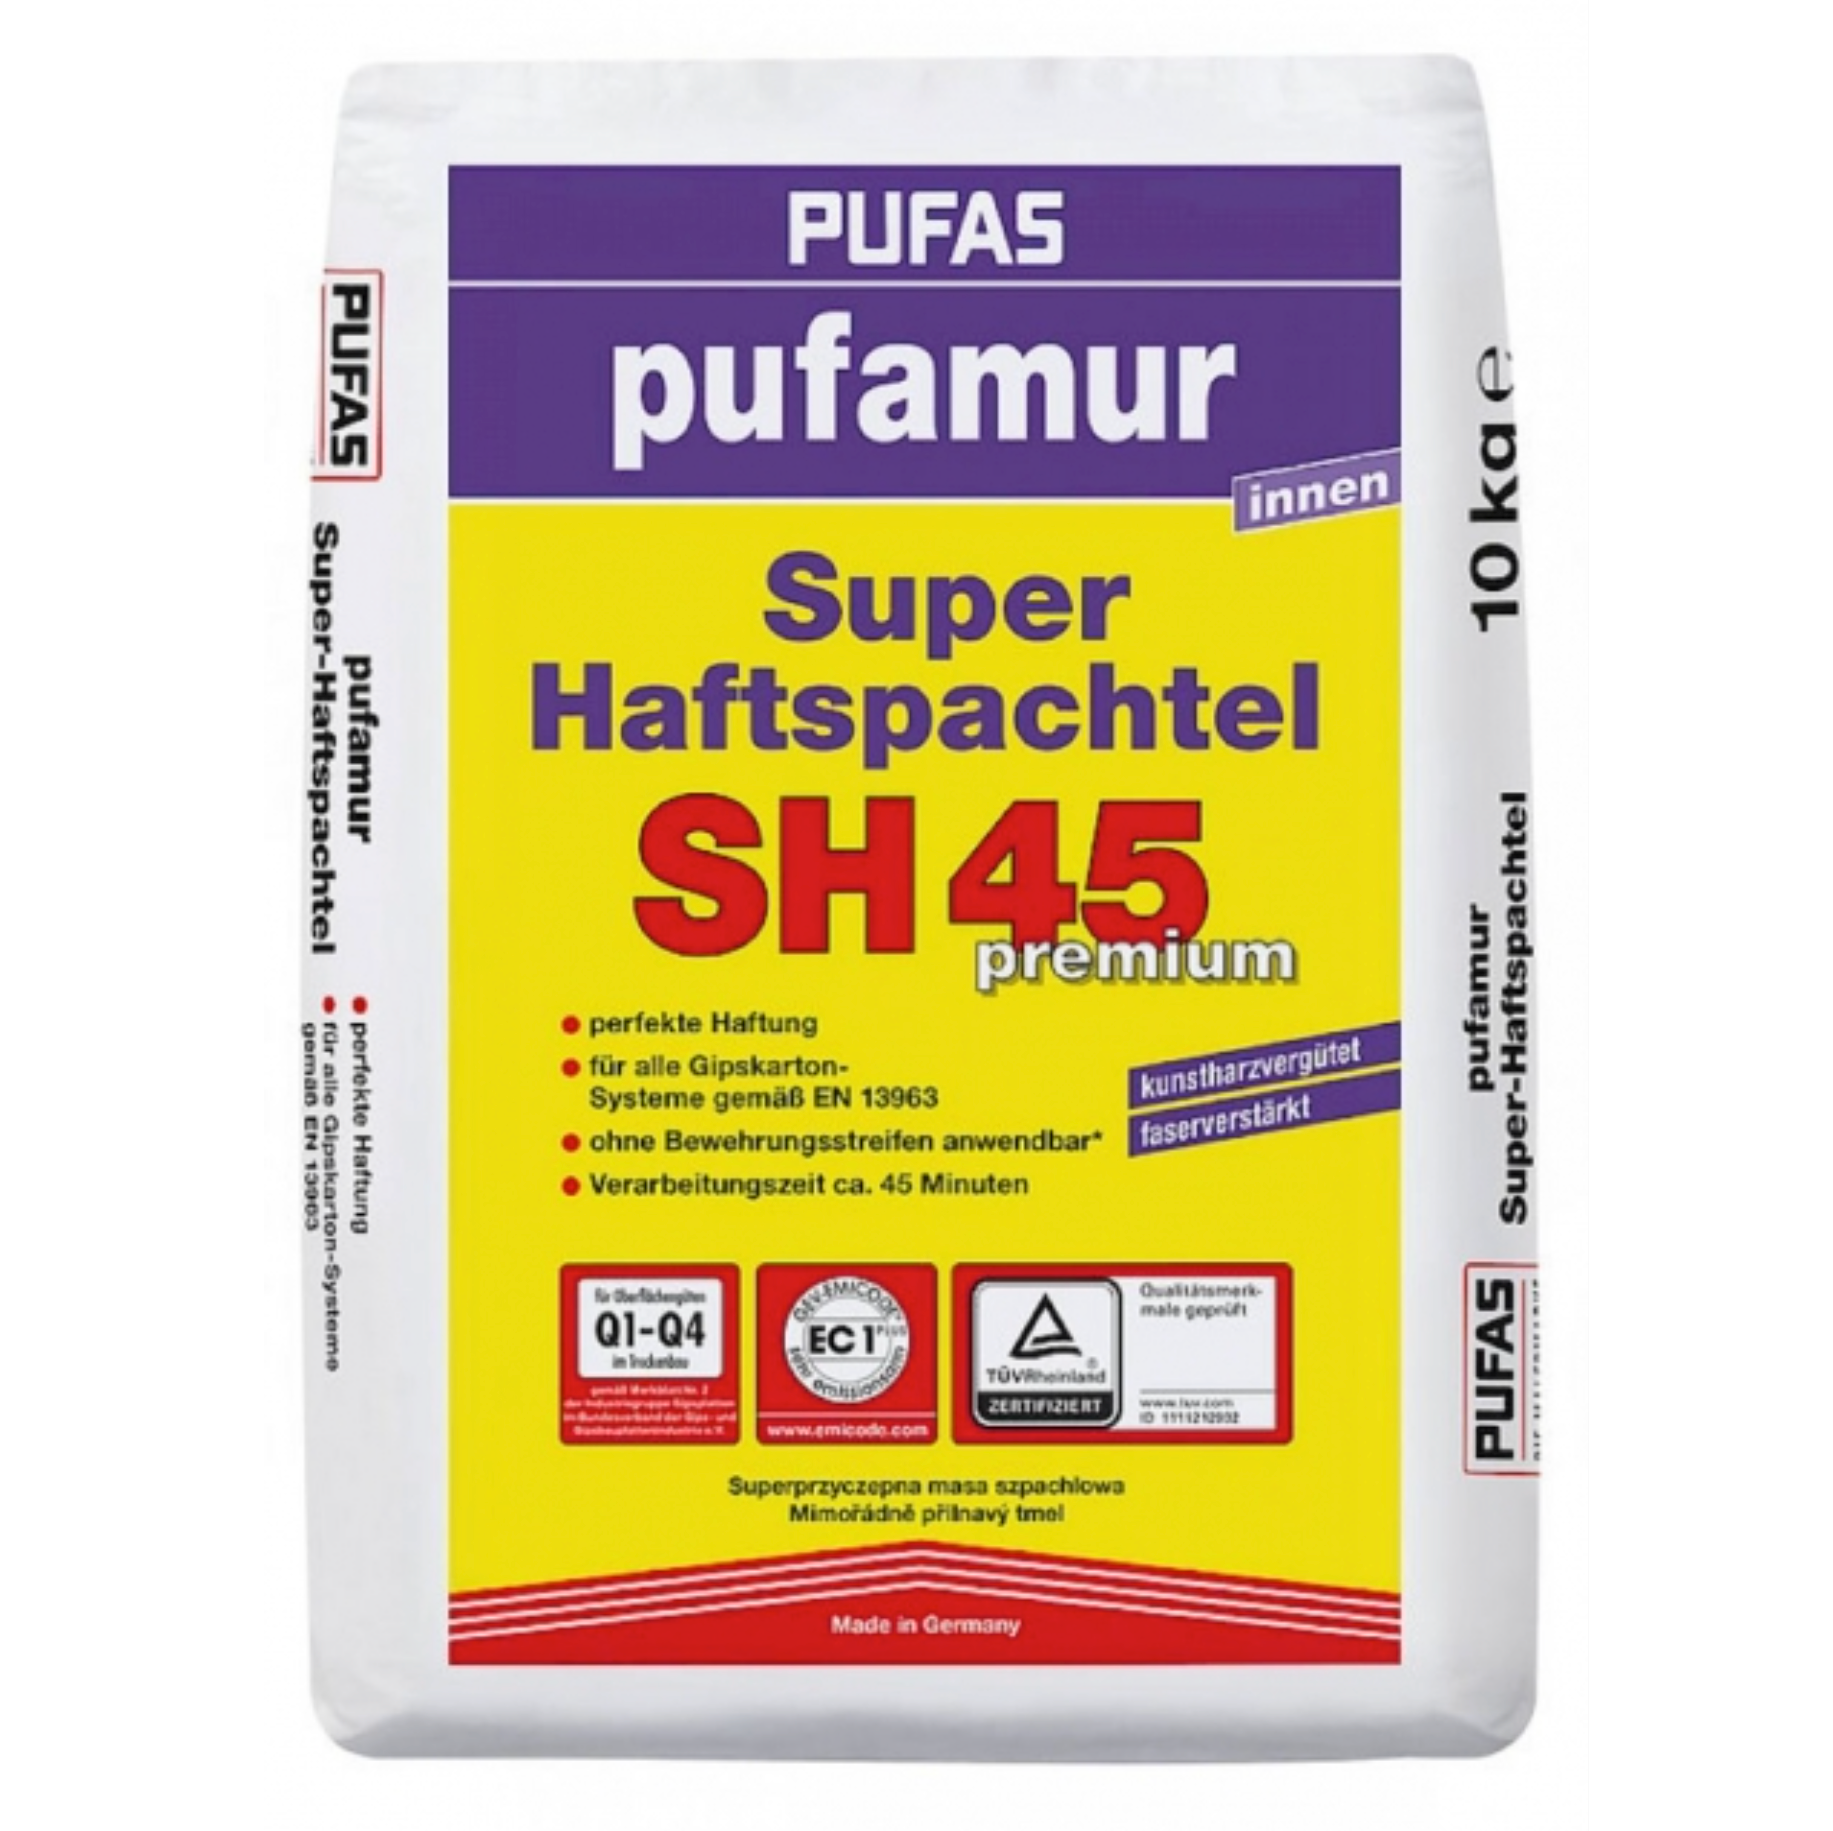 pufamur Super-Haftspachtel SH45 premium